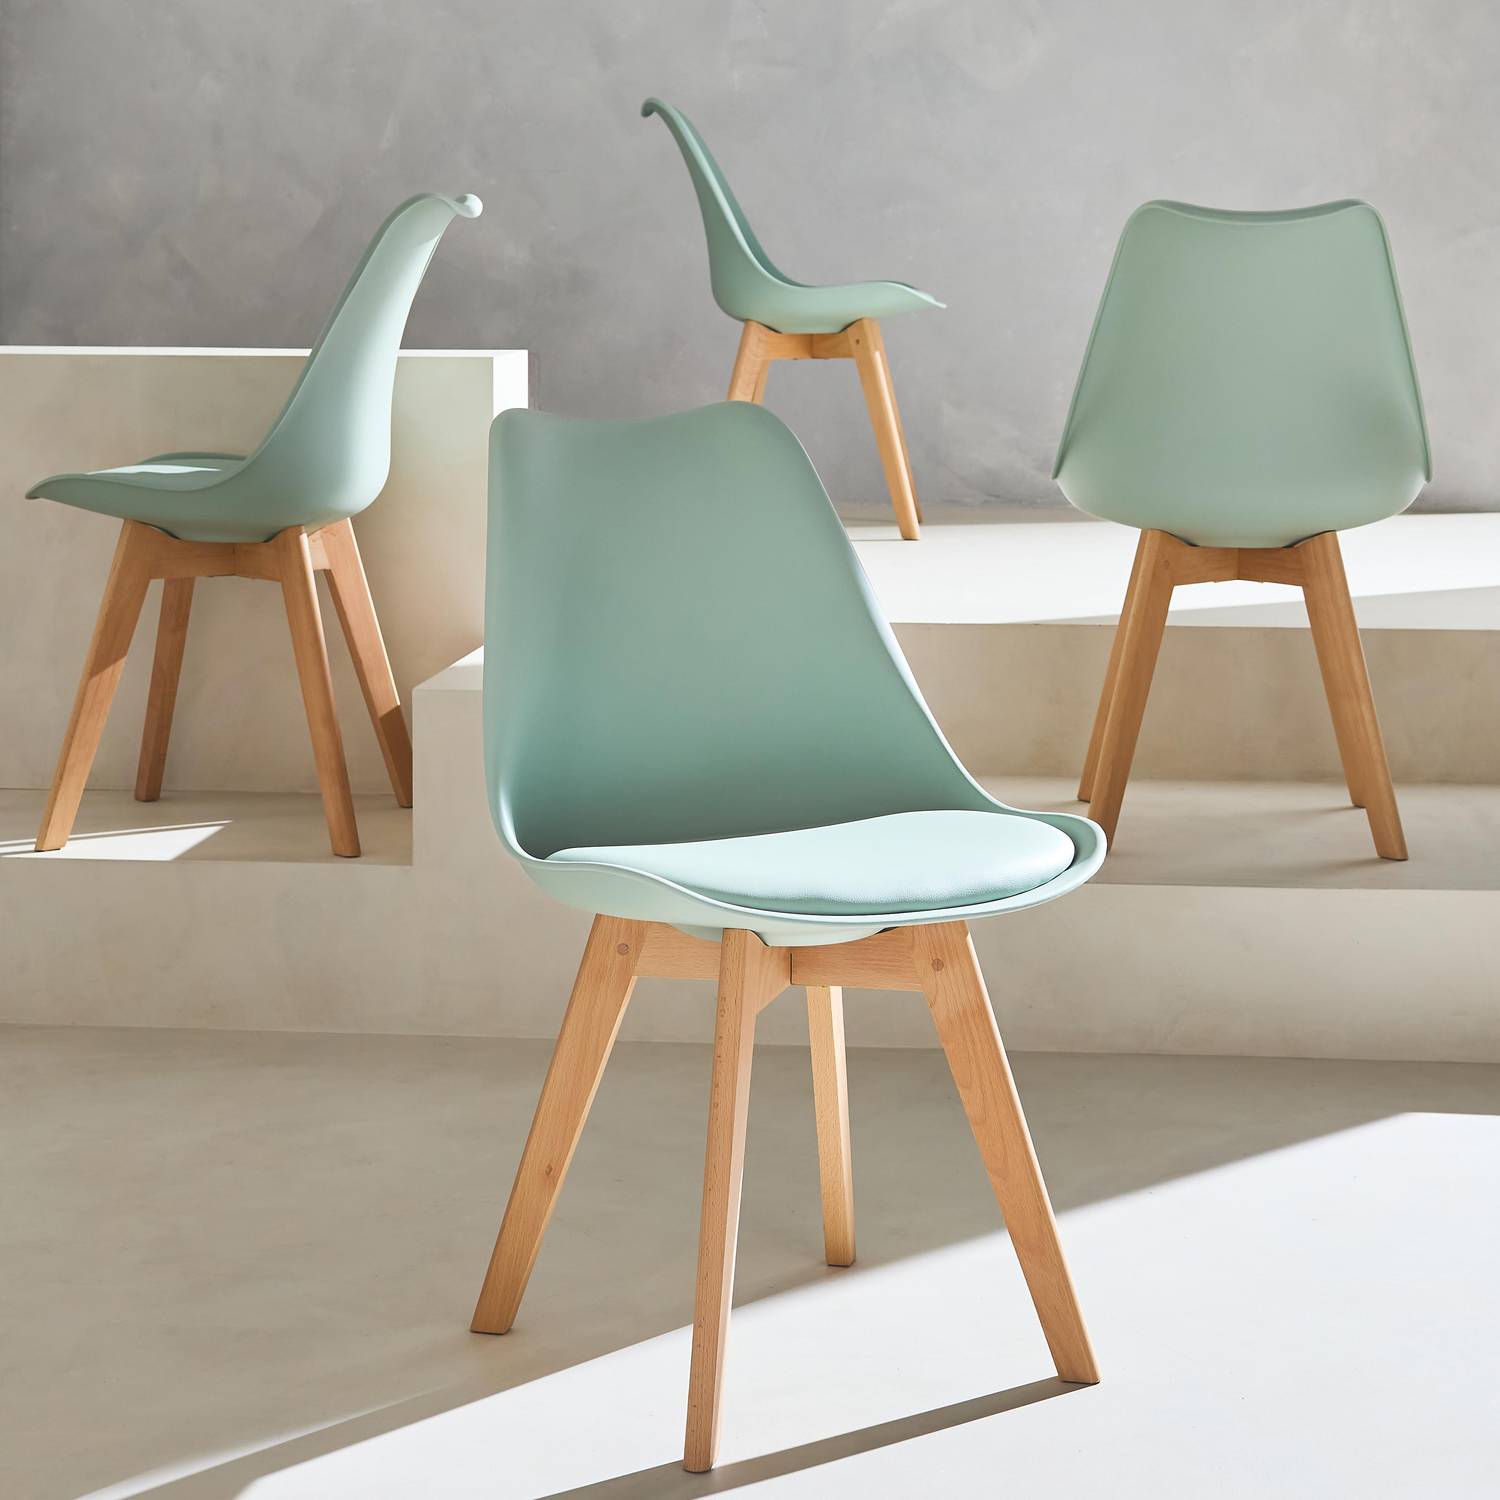 Lot de 4 chaises scandinaves, pieds bois de hêtre, fauteuils 1 place, vert céladon Photo2